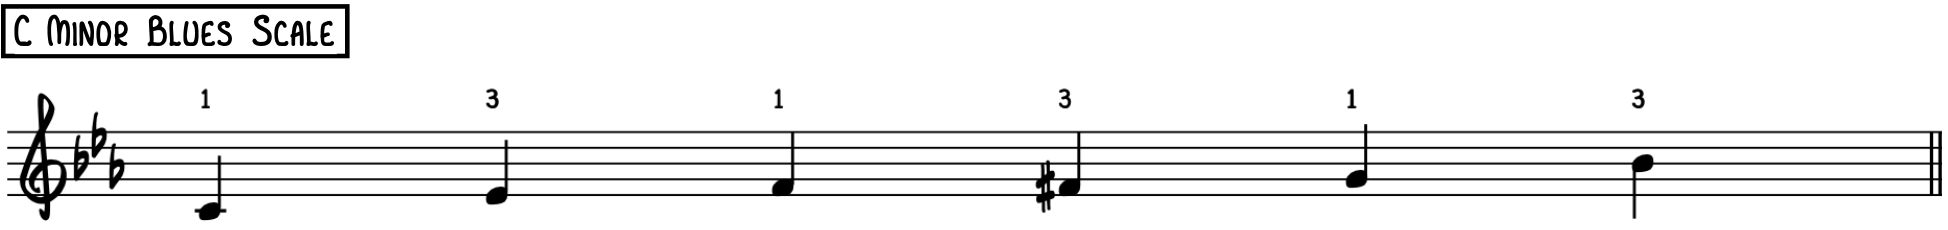 Блюзовая гамма до минор для импровизации фортепианного джаза в стиле лаунж-джаз